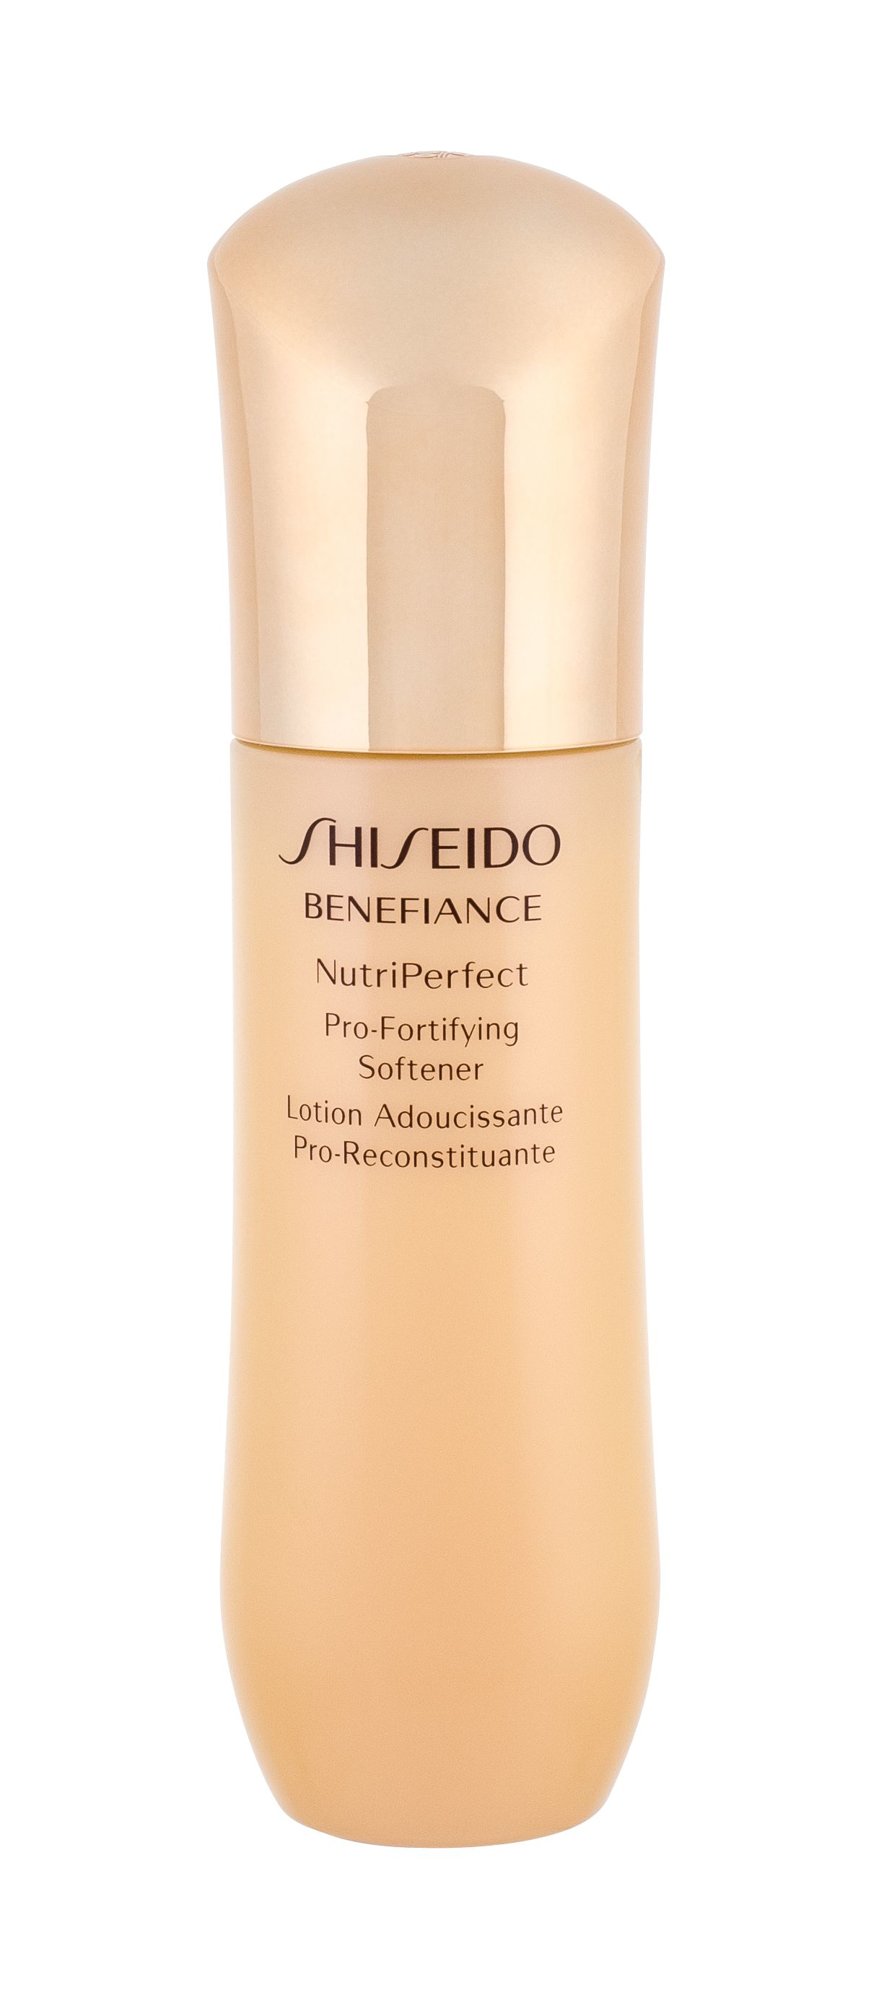 Shiseido Benefiance NutriPerfect valomasis vanduo veidui